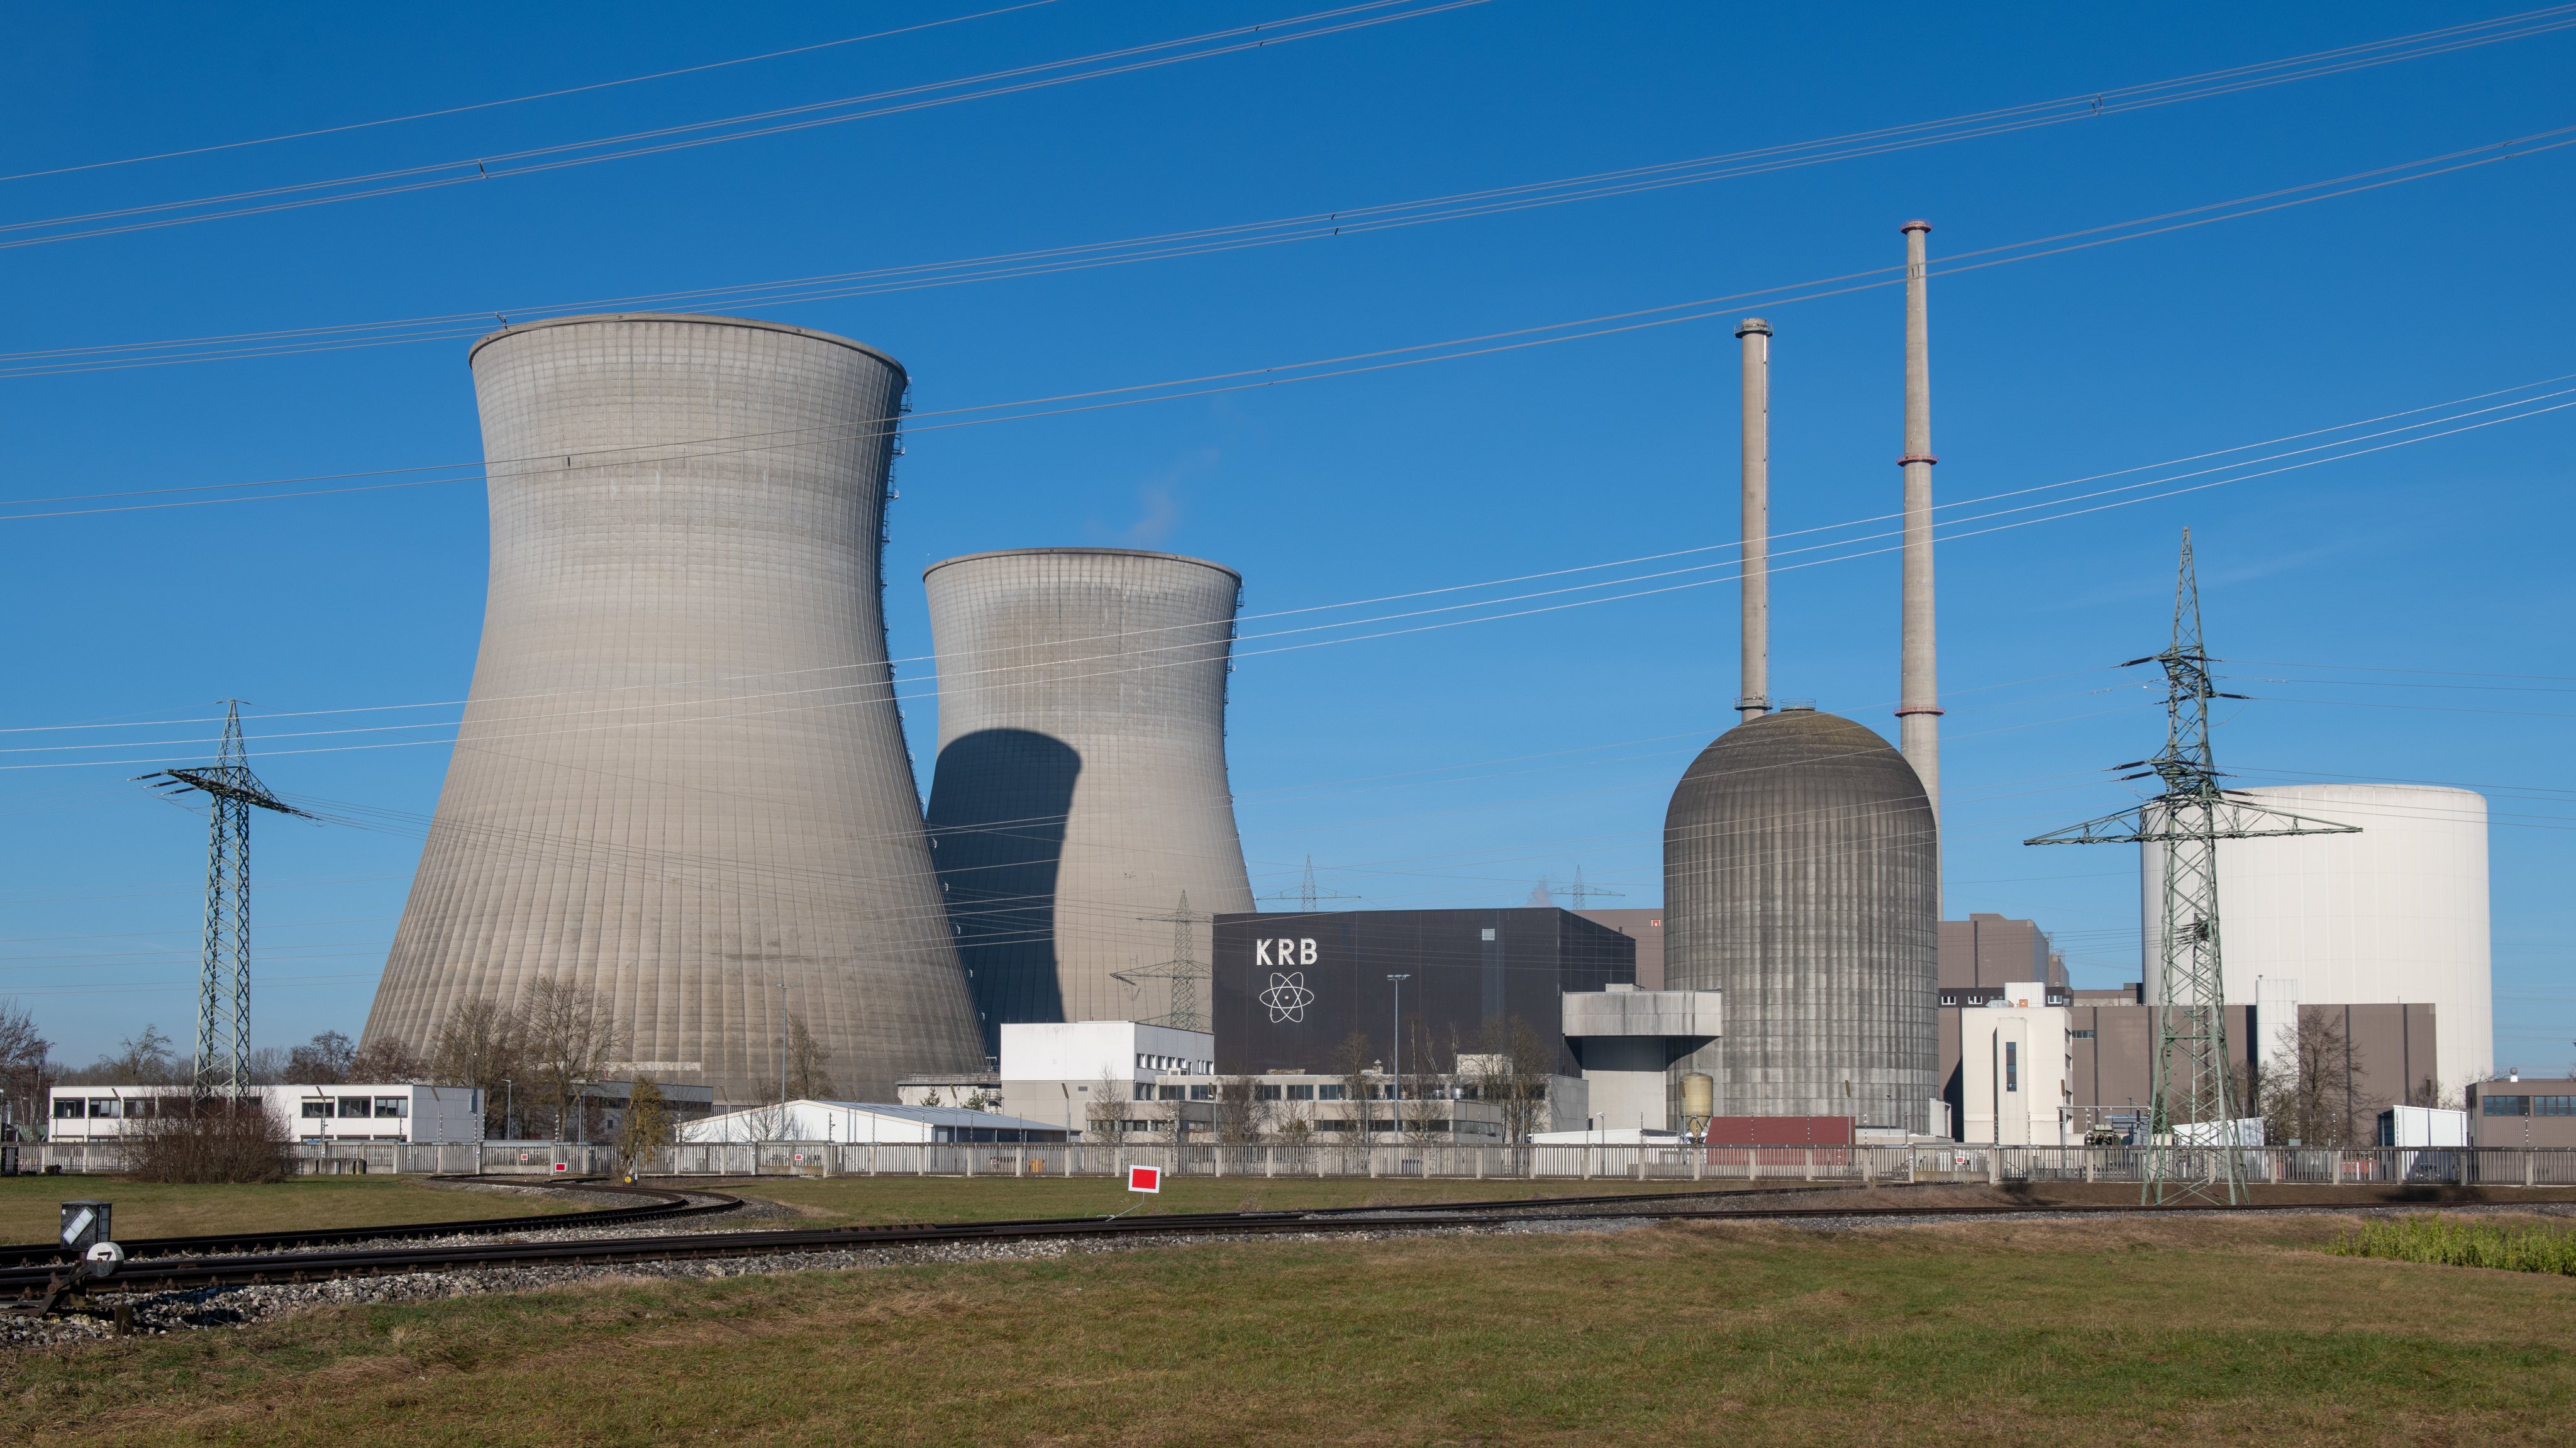 Газ ядерная энергия. Атомная энергия фото. ГАЗ атом. ТГК-1, белорусская АЭС завод фото. Umweltorganisationen.